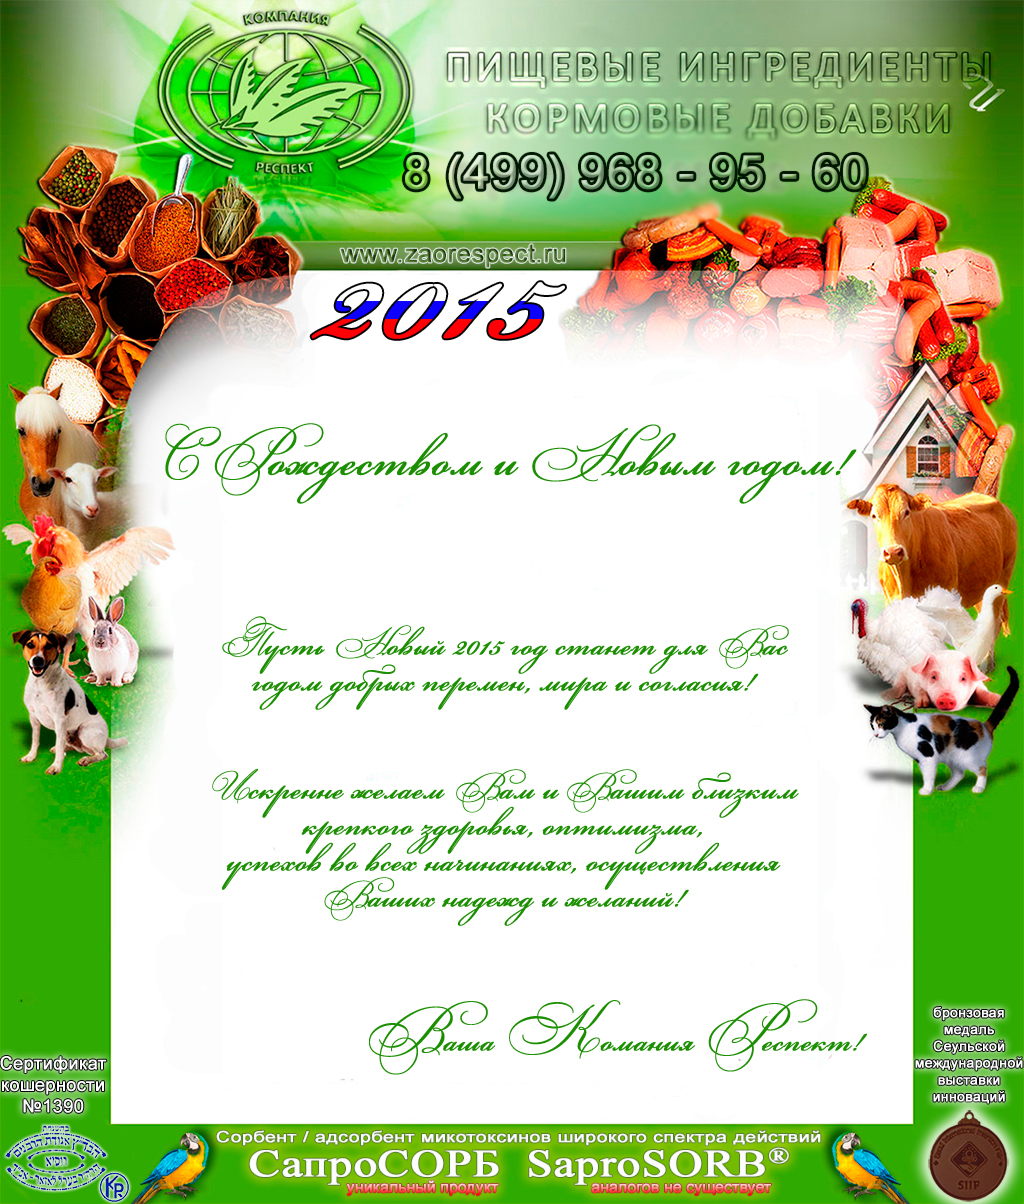 открытка поздравительная от ЗАО РЕСПЕКТ, кормовые добавки для животных, животноводство Сапросорб Сорбент микотоксинов